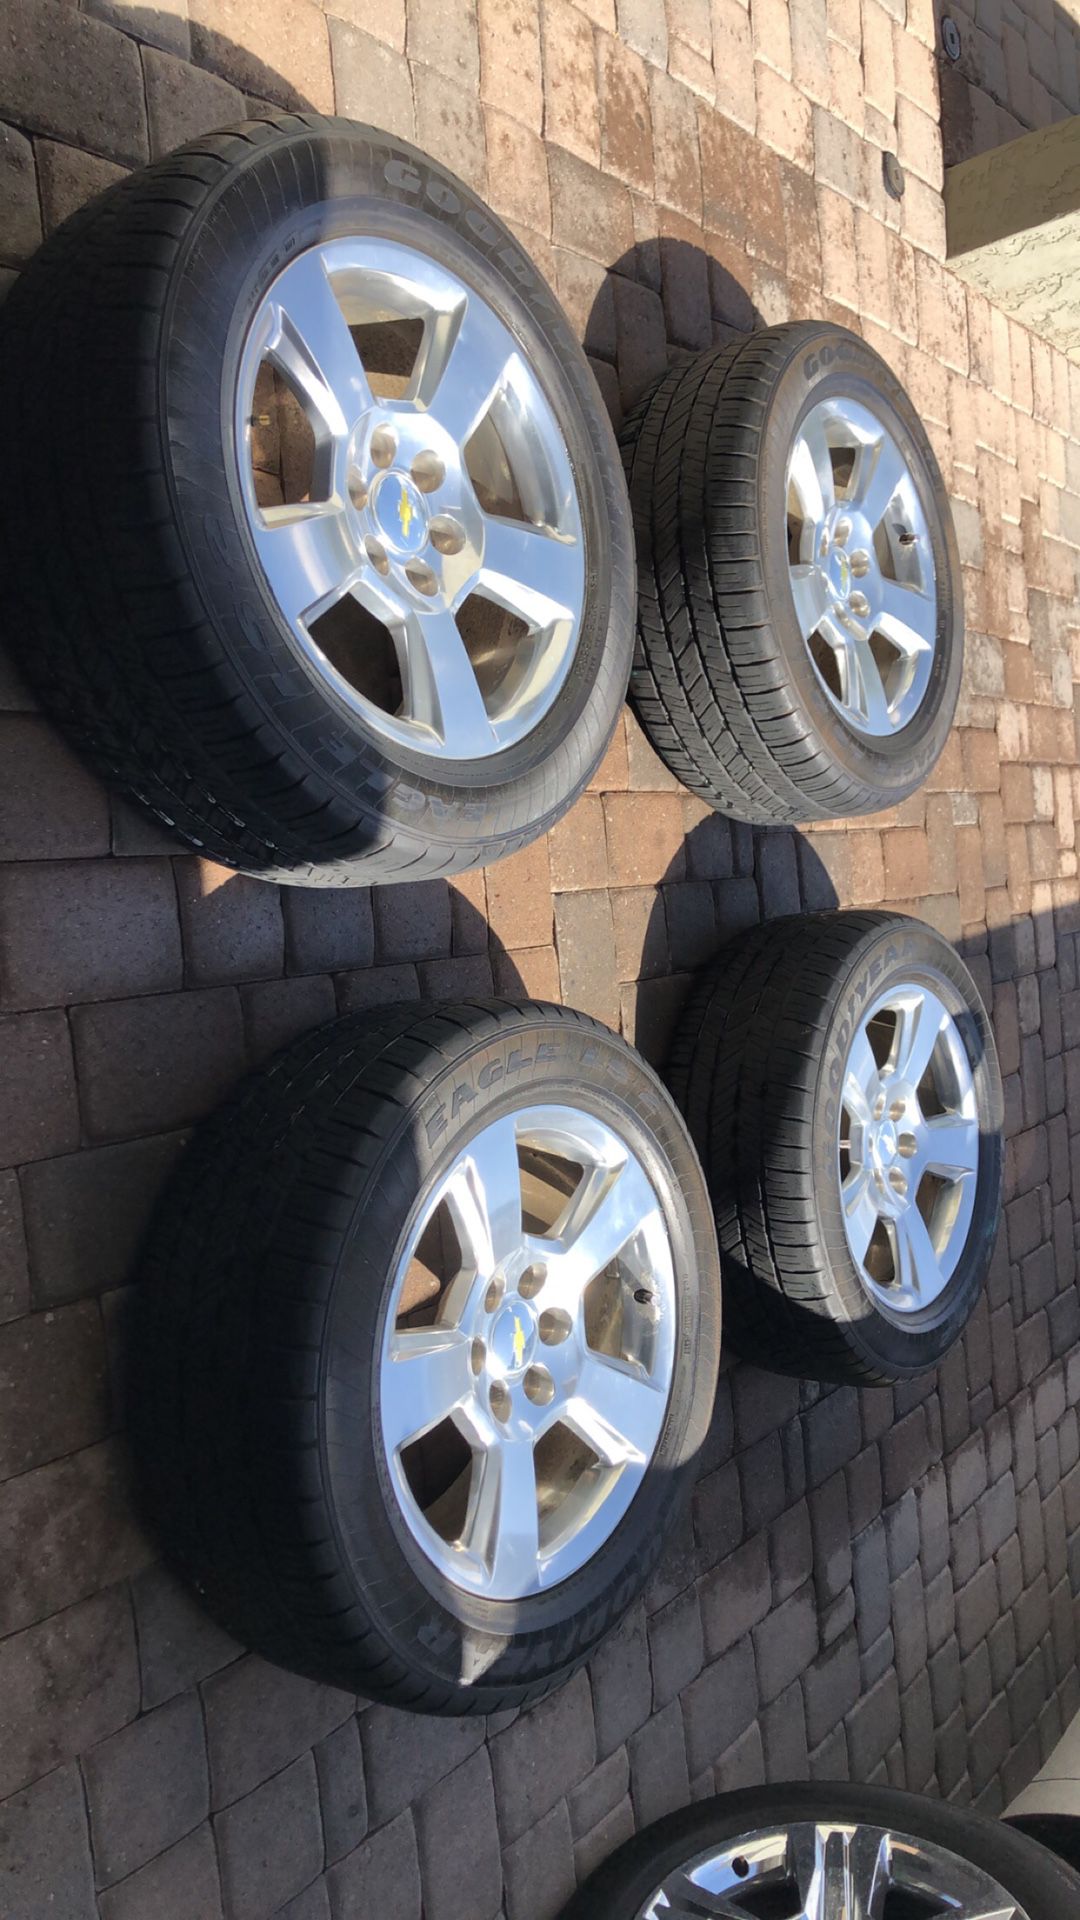 Chevy Silverado tires and rims 20’ $800 obo